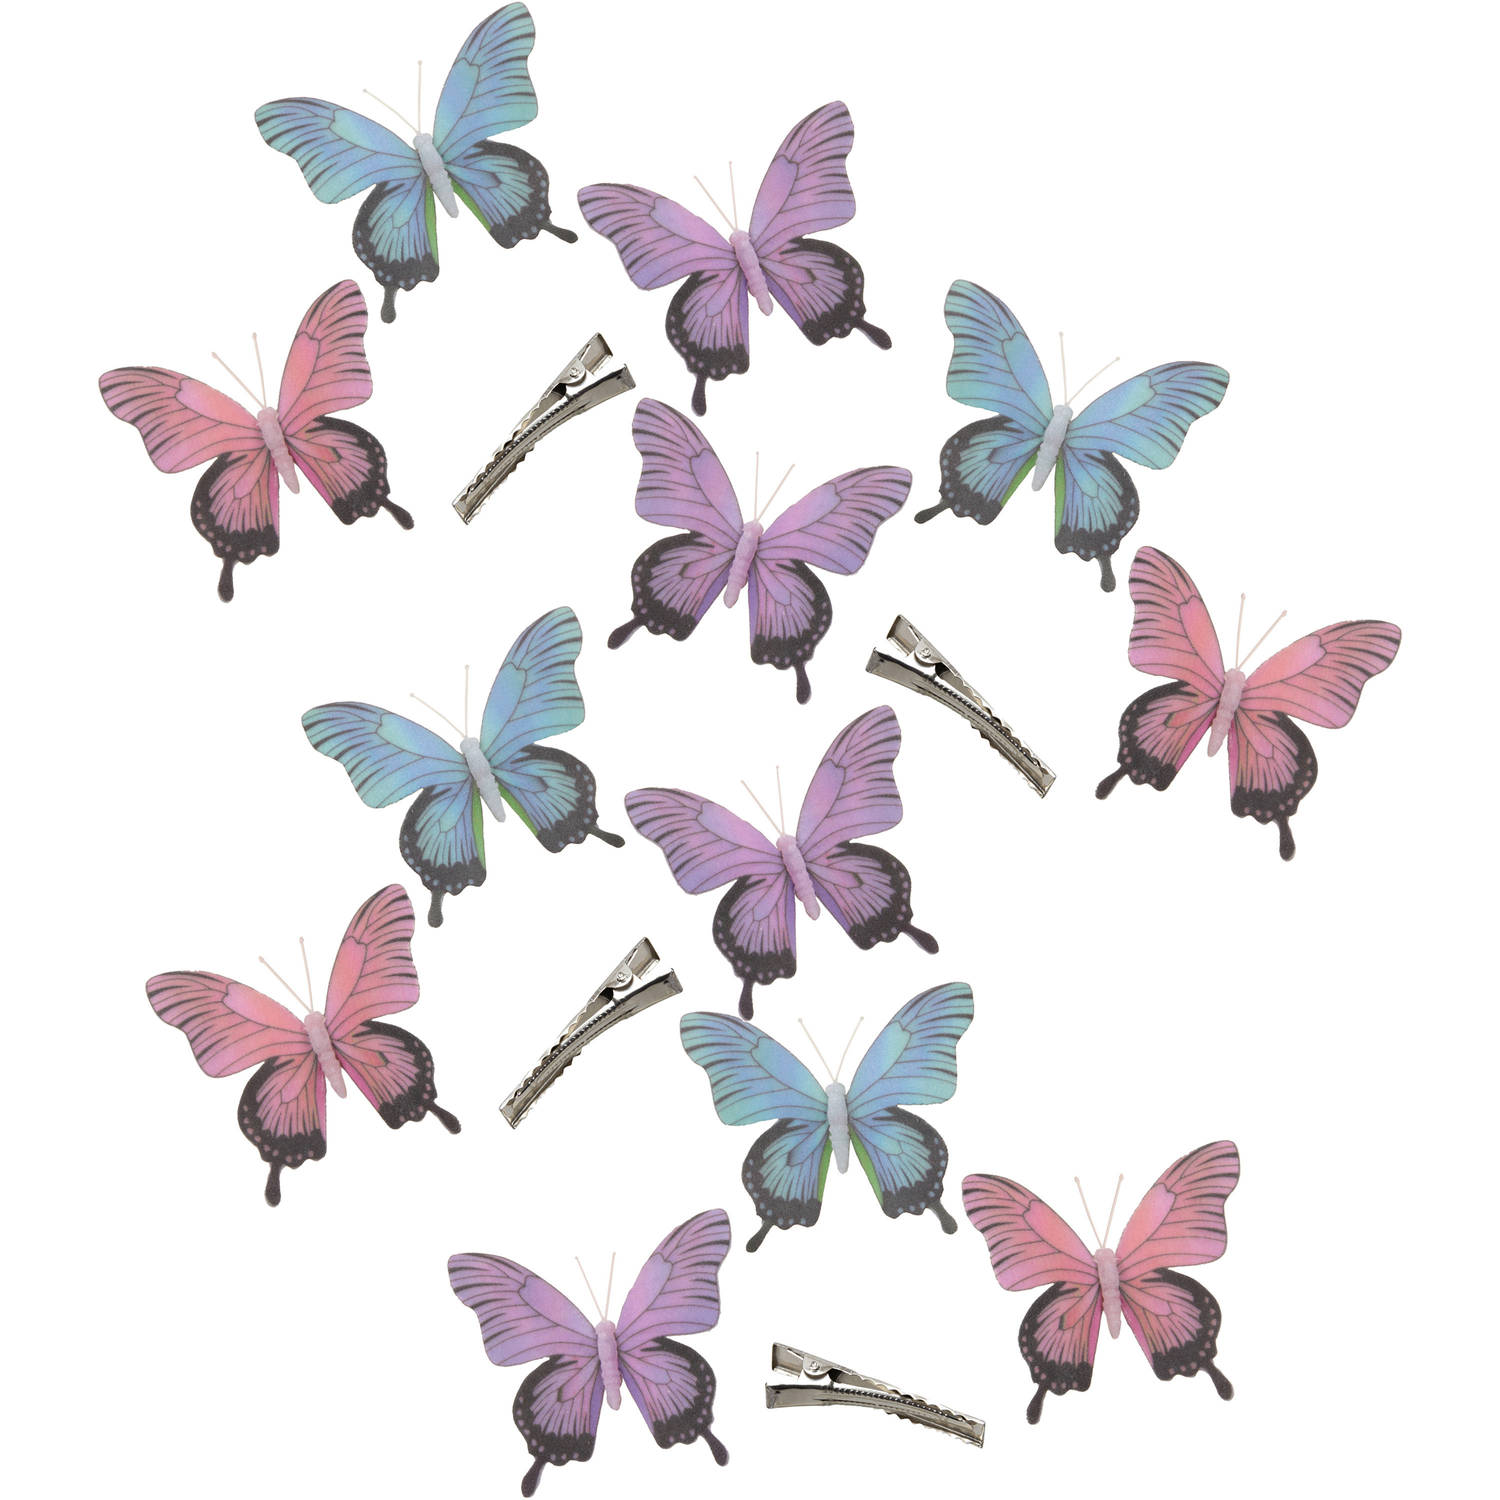 12x stuks decoratie vlinders op clip - paars/blauw/roze - 12 cm - Hobbydecoratieobject